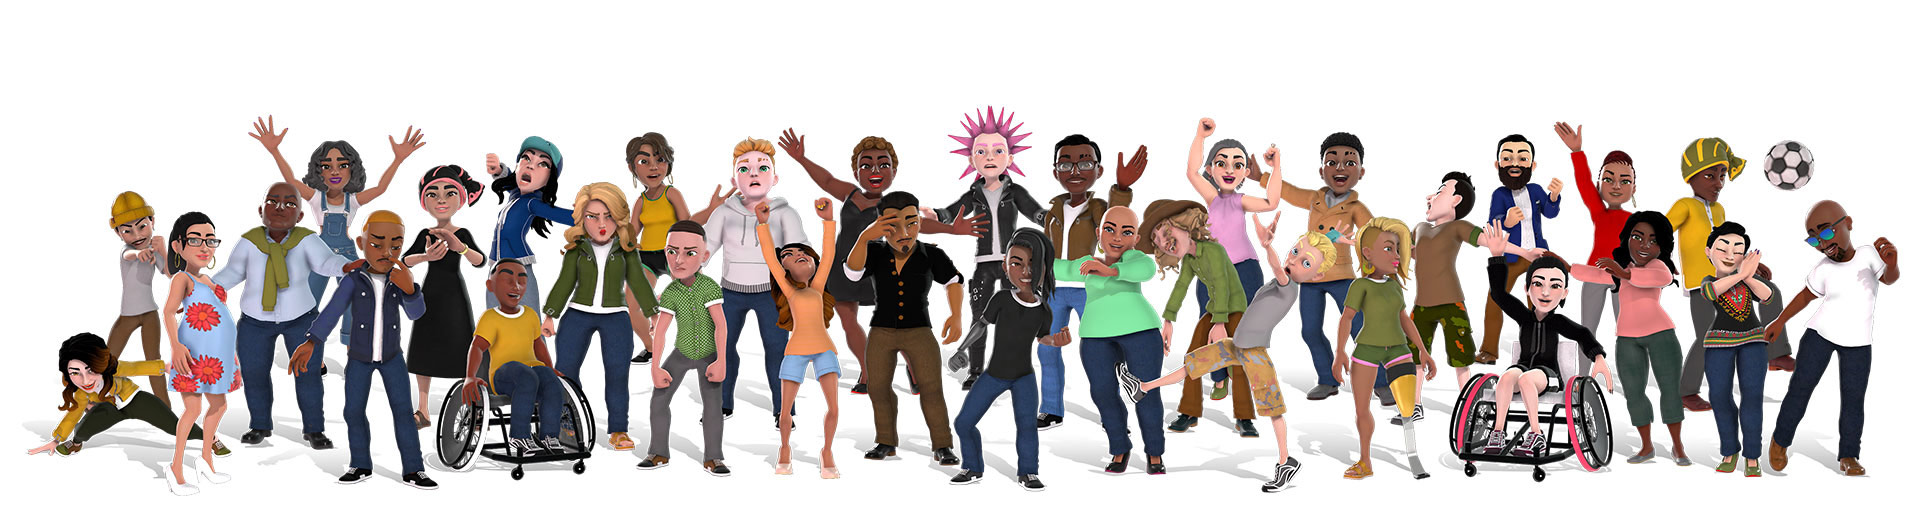 Xbox avatary zobrazujúce rôznorodé skupiny ľudí v rôznych oblečeniach